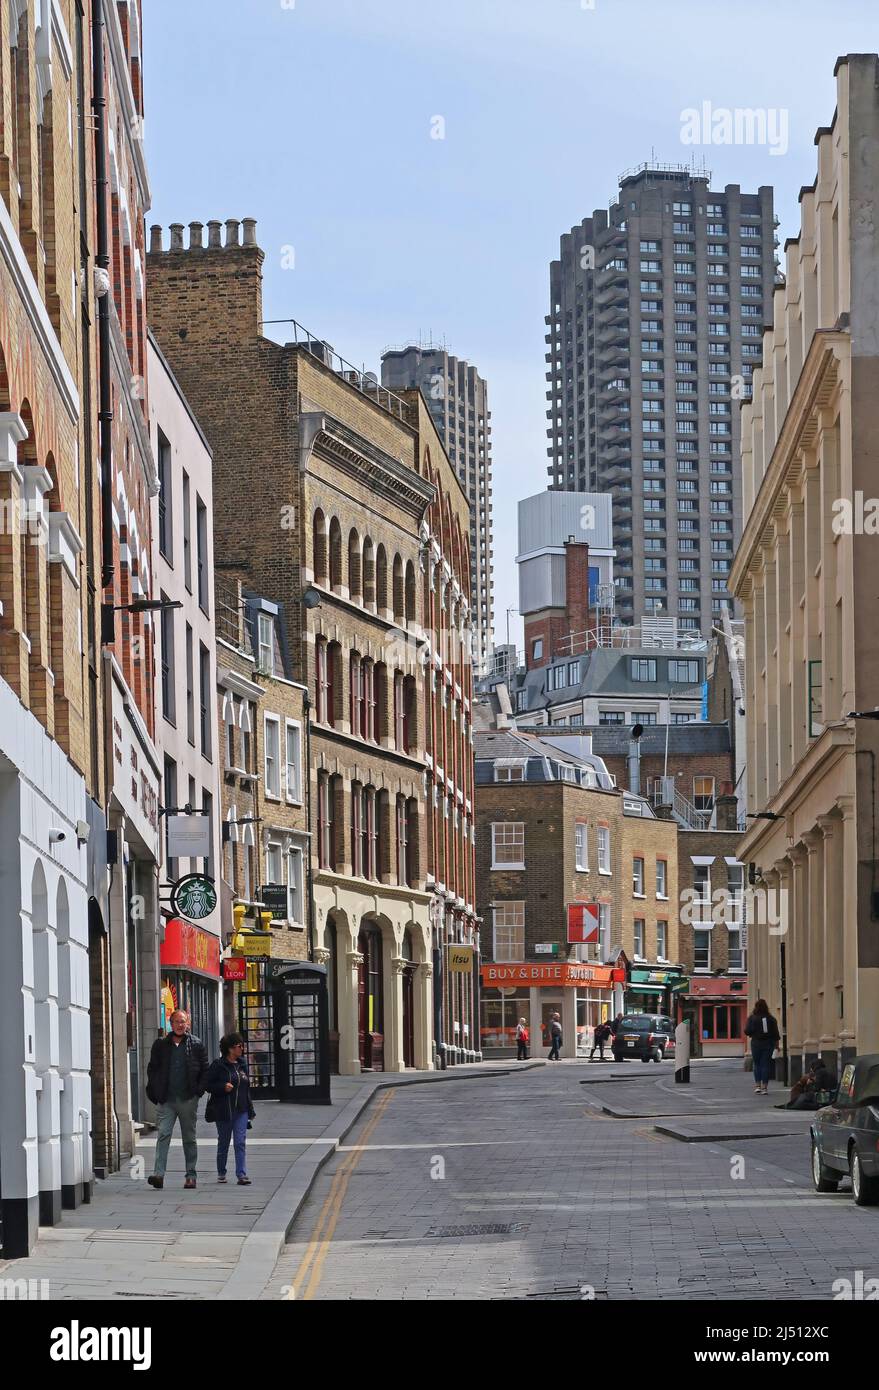 Cowcross Street nella città di Londra, Regno Unito. Strada stretta, storica e popolare luogo di ripresa mostra la torre barbicana sullo sfondo. Foto Stock